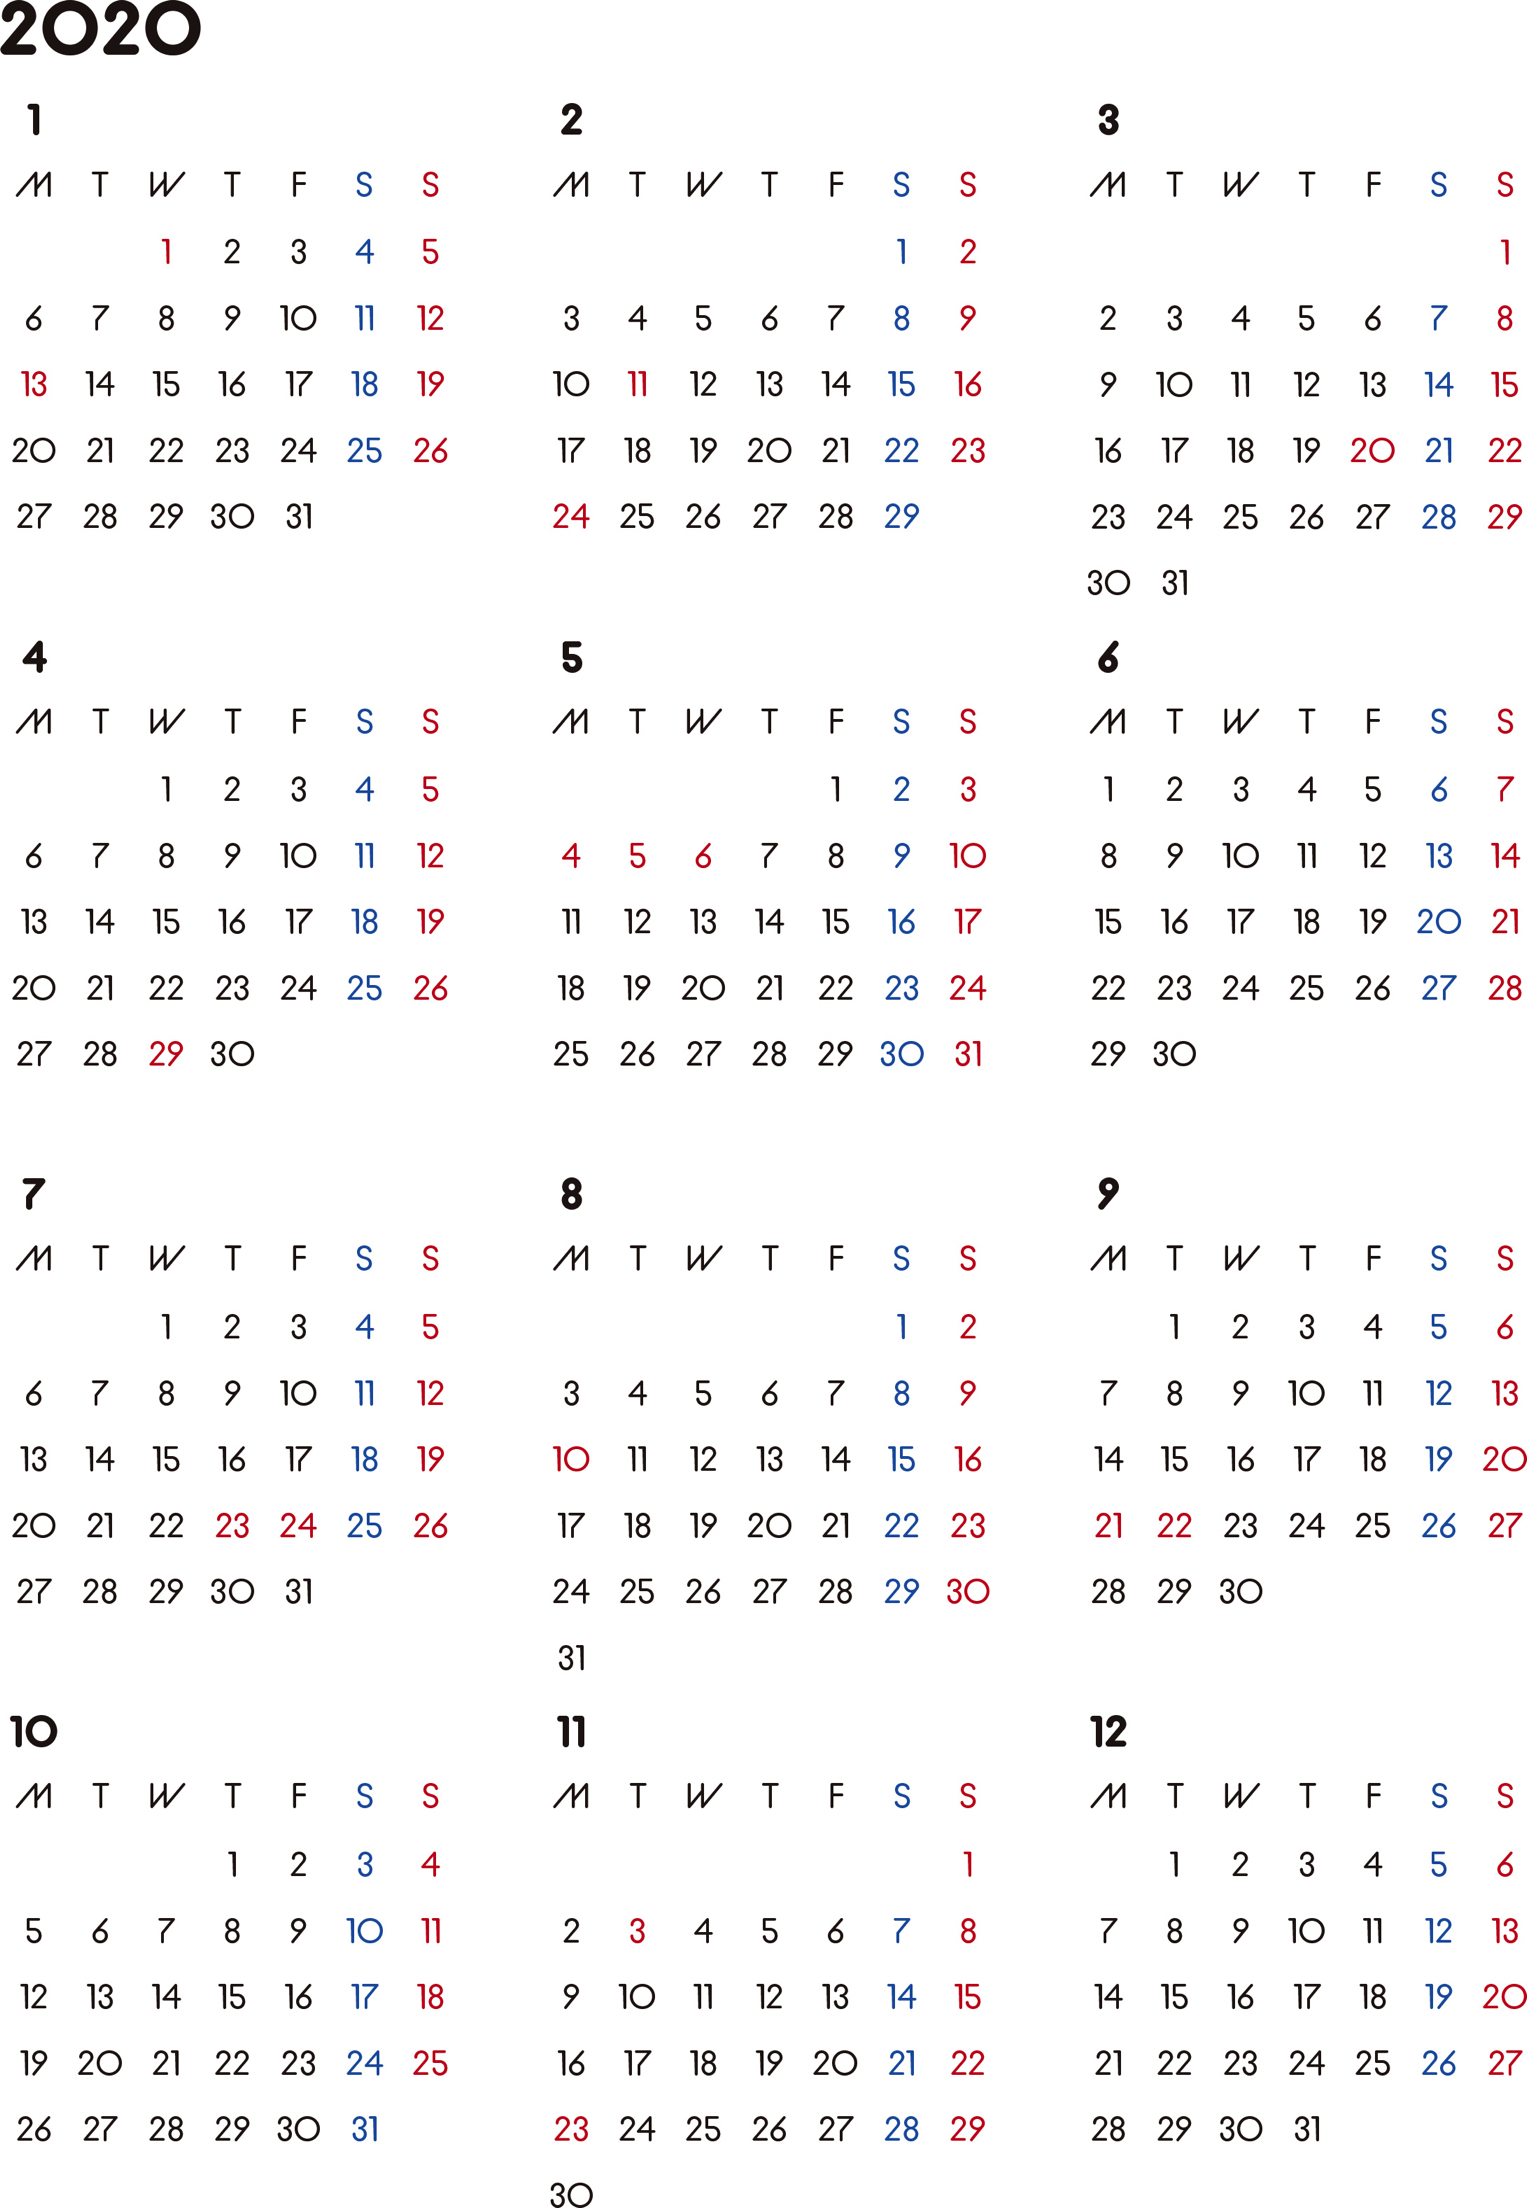 カレンダー 無料 シンプルなカレンダー 背景なし 月曜始まり 公式 イラスト素材サイト イラストダウンロード